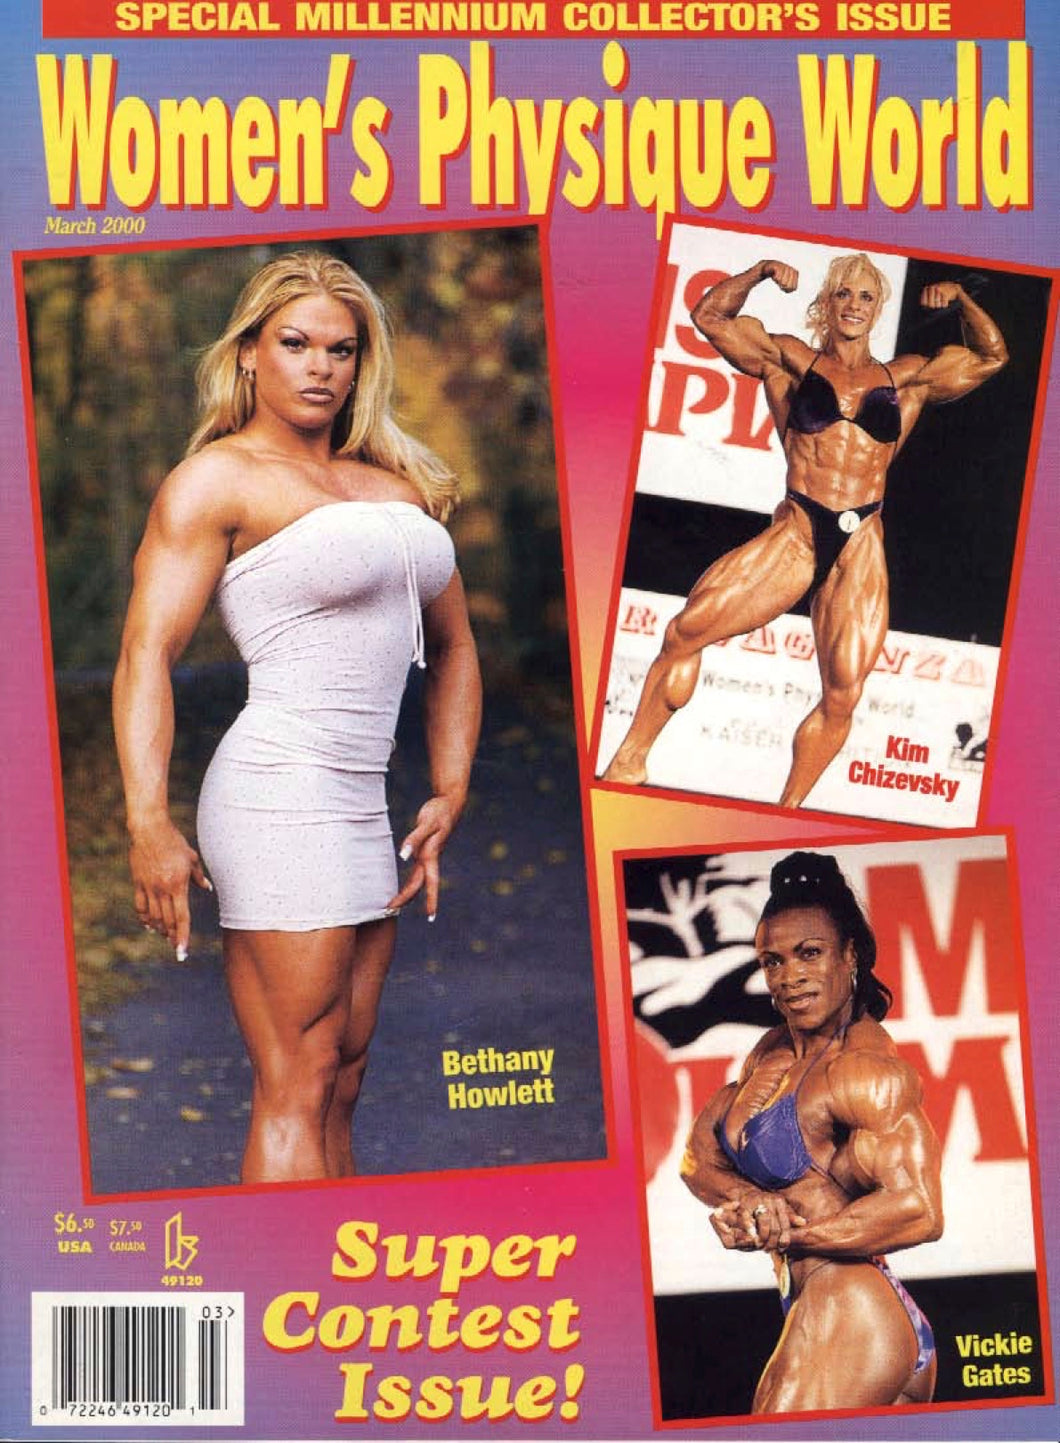 WPW March 2000 Magazine Issue